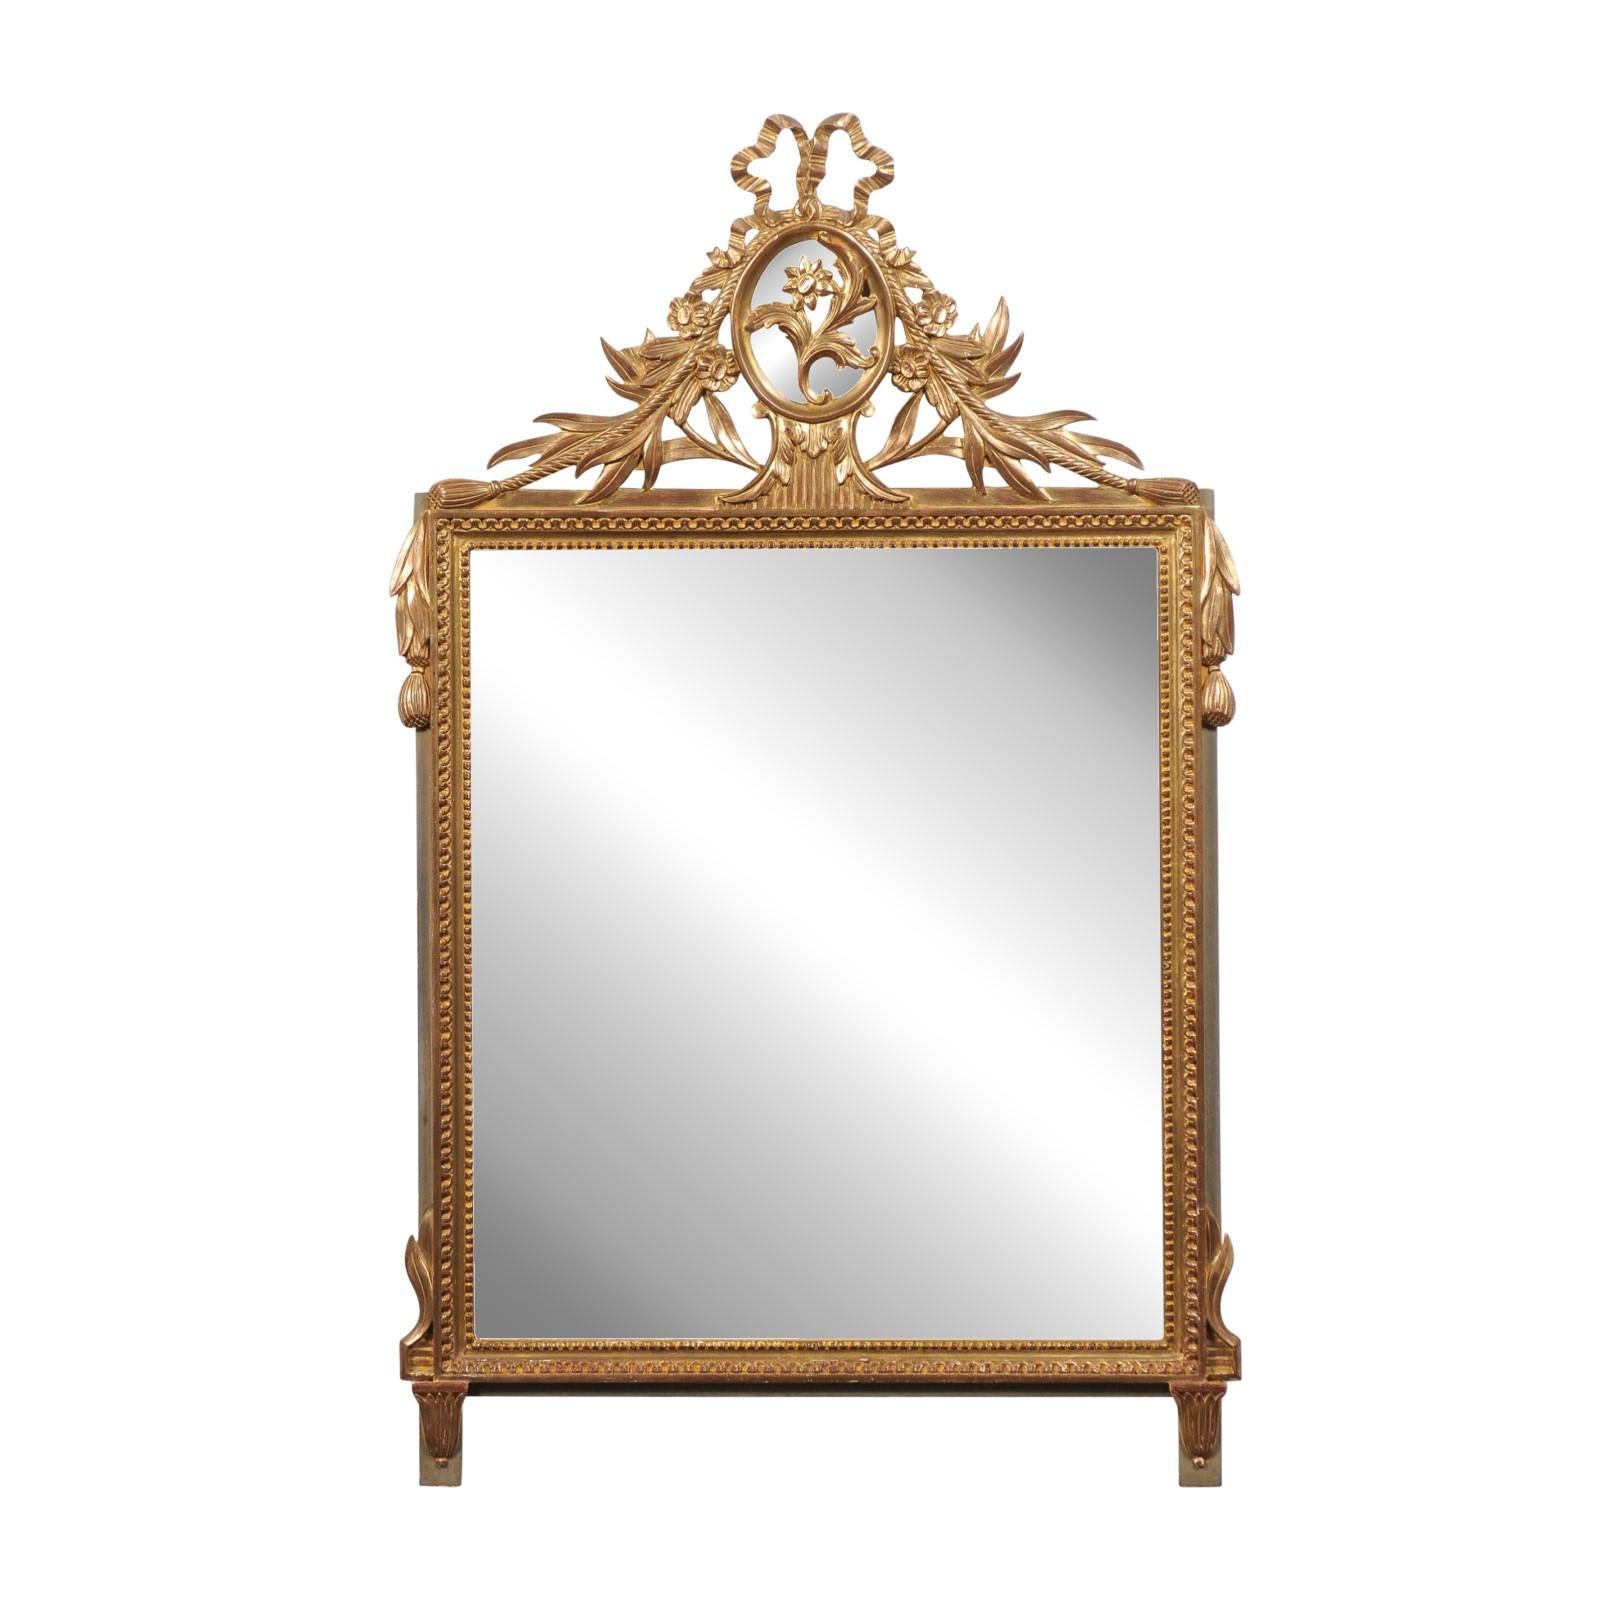 Ein französischer Spiegel aus vergoldetem Holz im Louis-XVI-Stil aus dem 20. Jahrhundert mit Blumenmedaillon, zierlichen geschnitzten Perlen und Quasten. Dieser Spiegel aus vergoldetem Holz im Stil Louis XVI aus dem 20. Jahrhundert ist eine Hommage